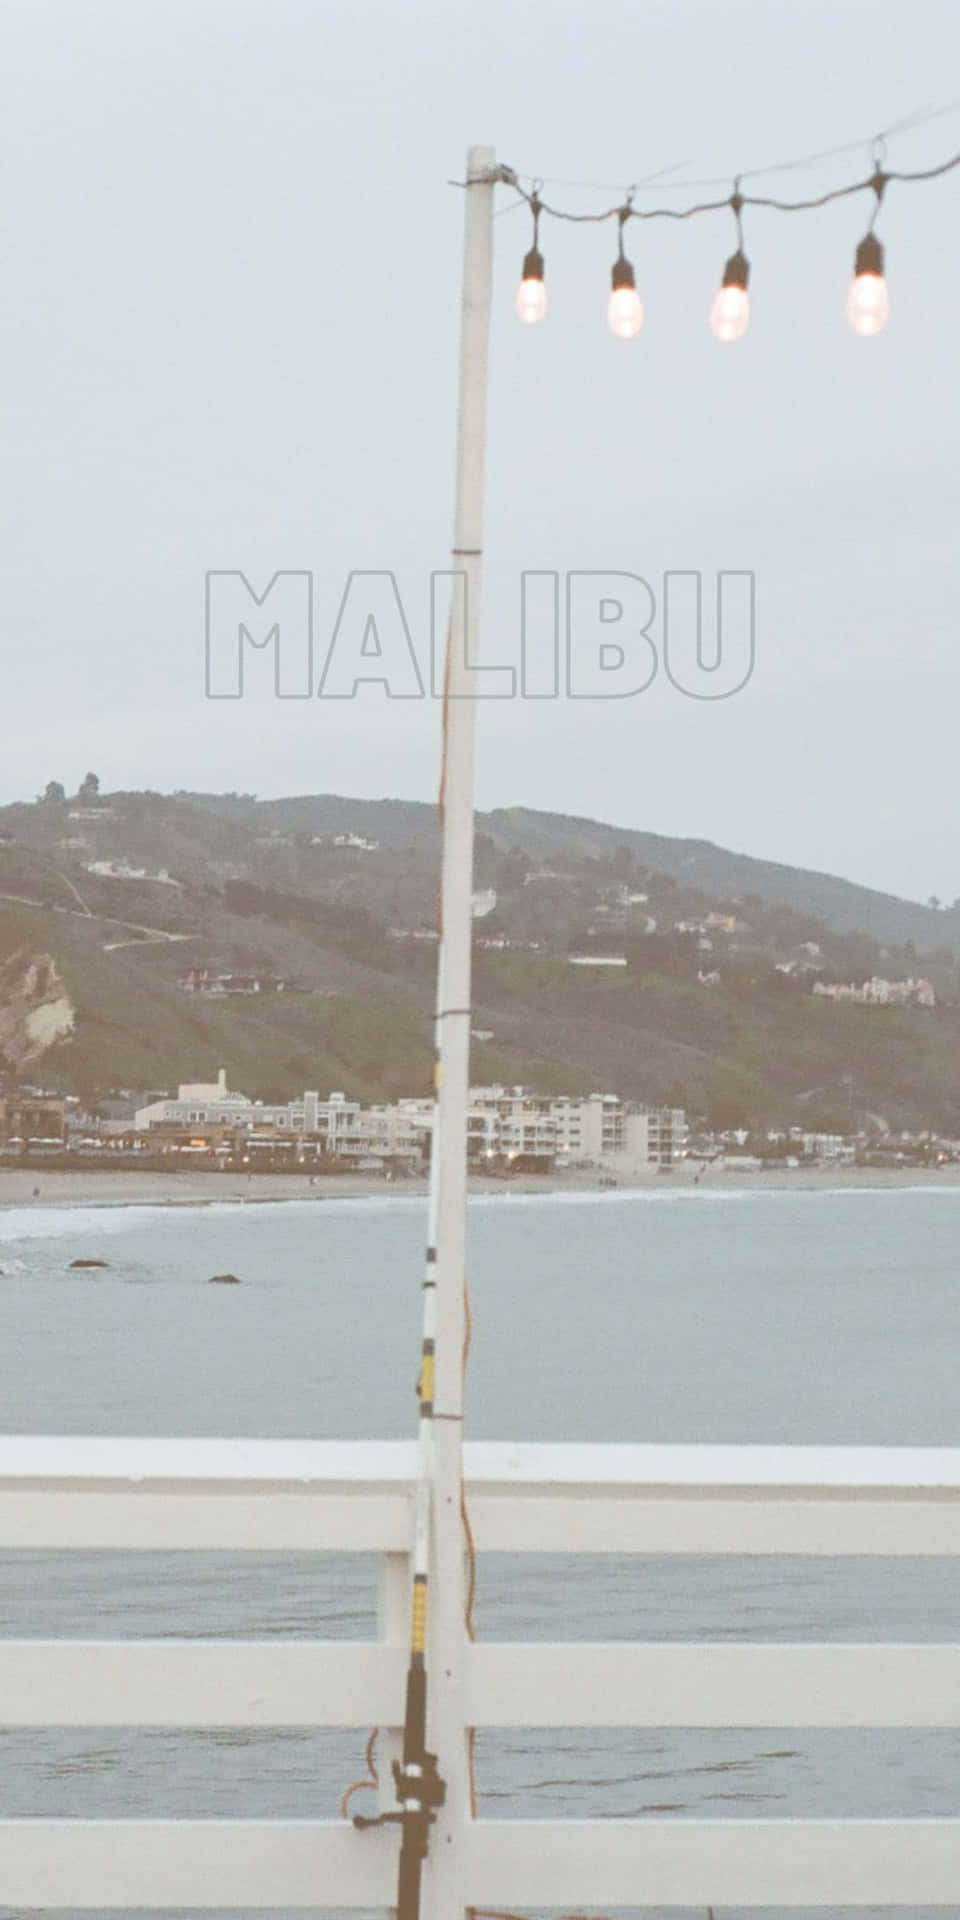 White Fence With Hanging Light Pixel 3 Malibu Background